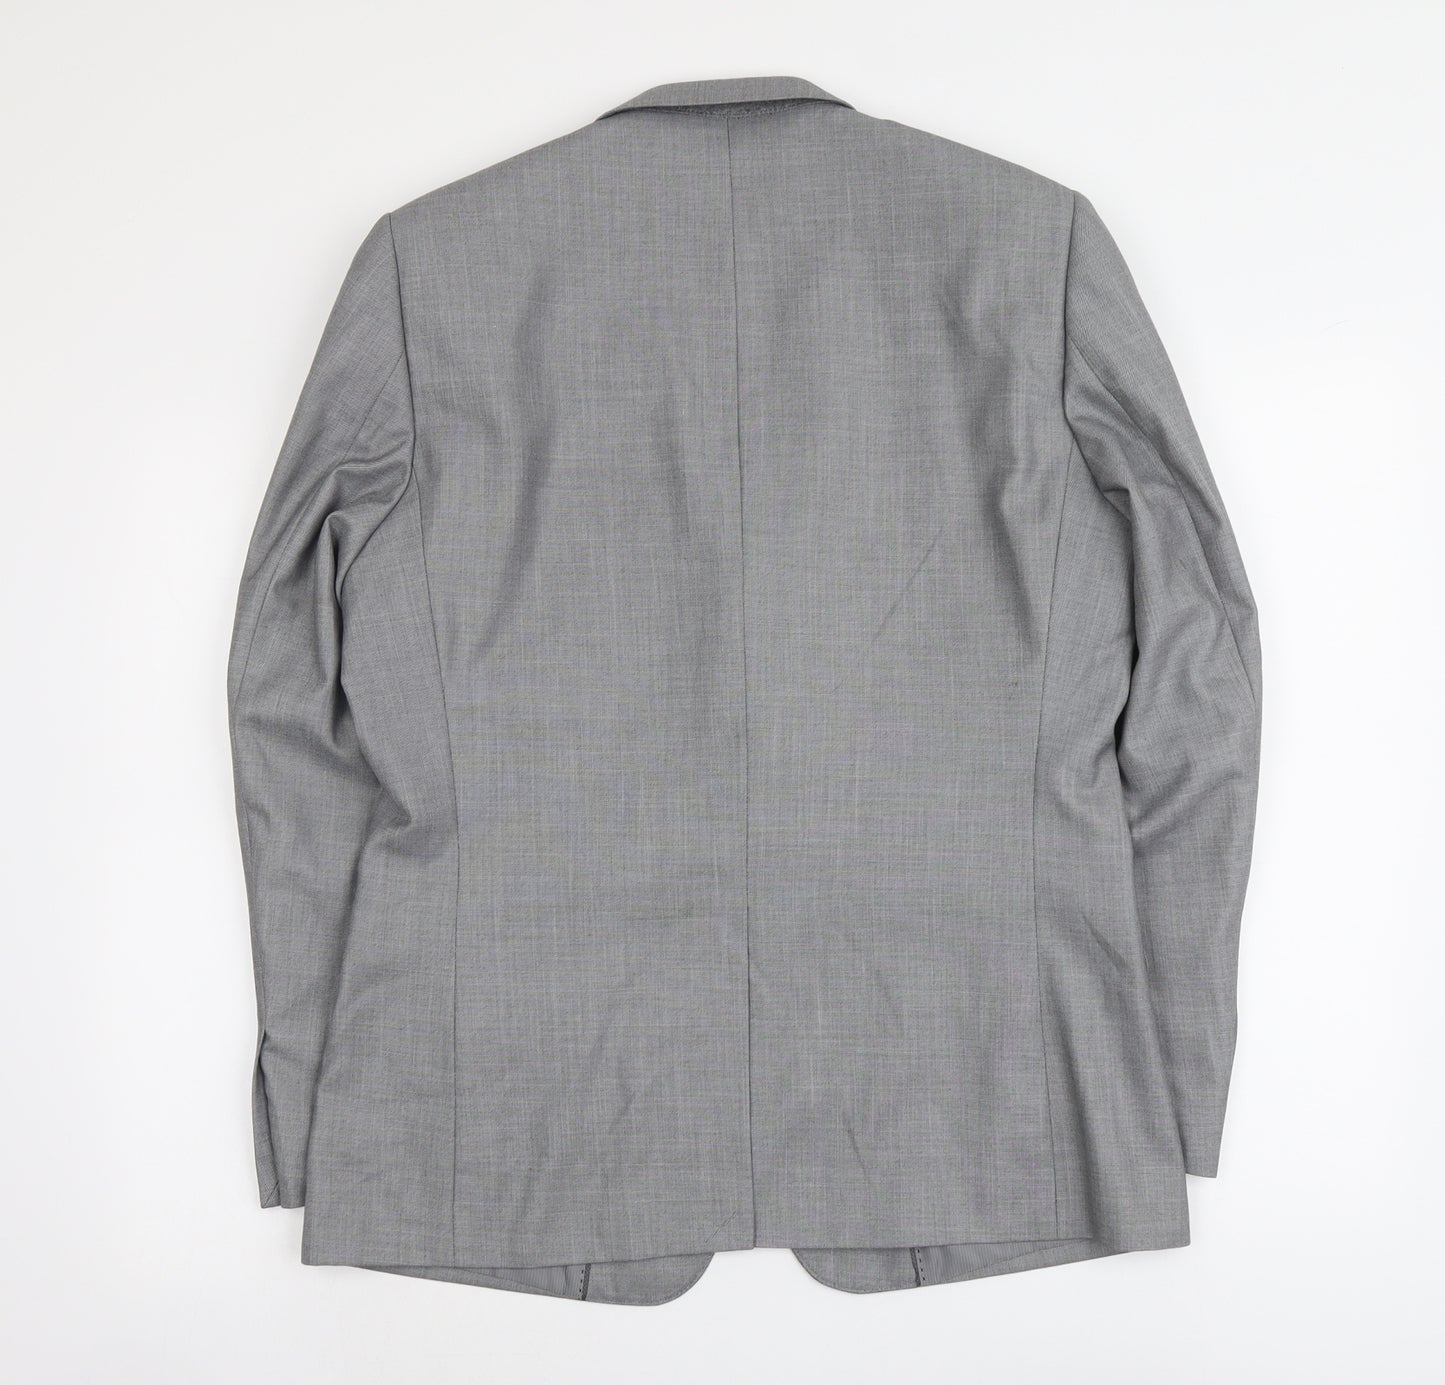 Butler And Webb Mens Grey Polyester Jacket Suit Jacket Size 40 Regular